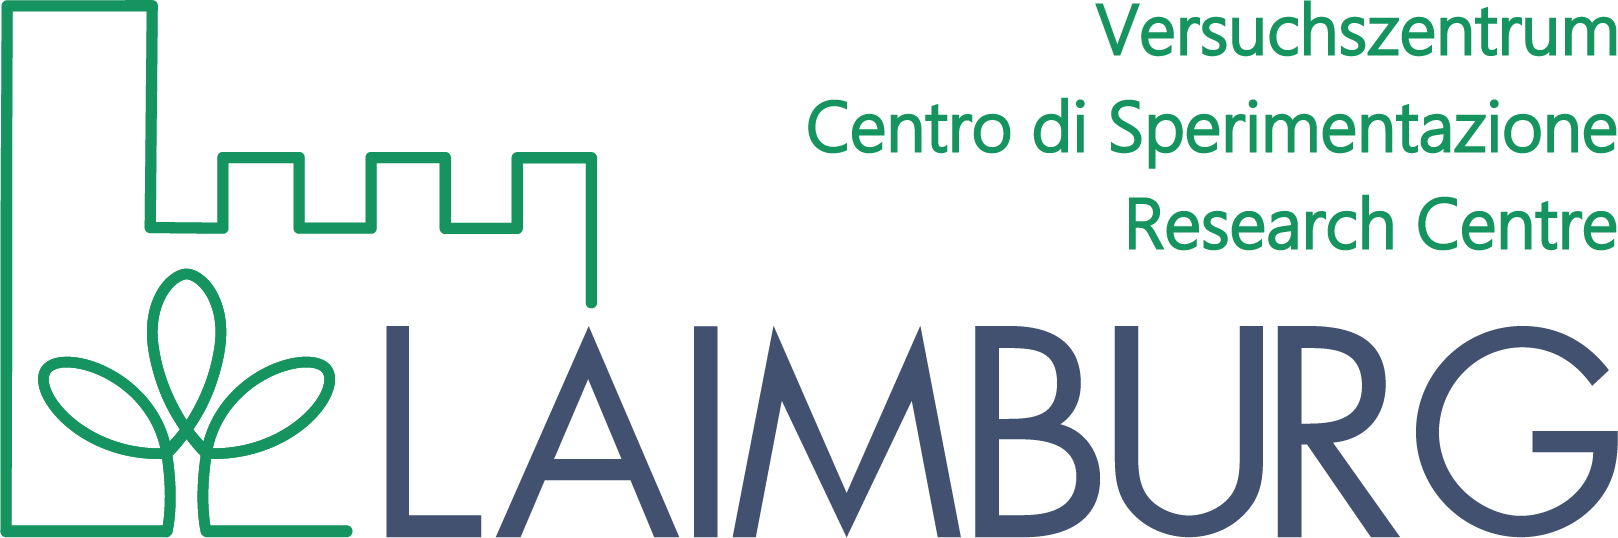 Versuchszentrum Laimburg Logo 2018